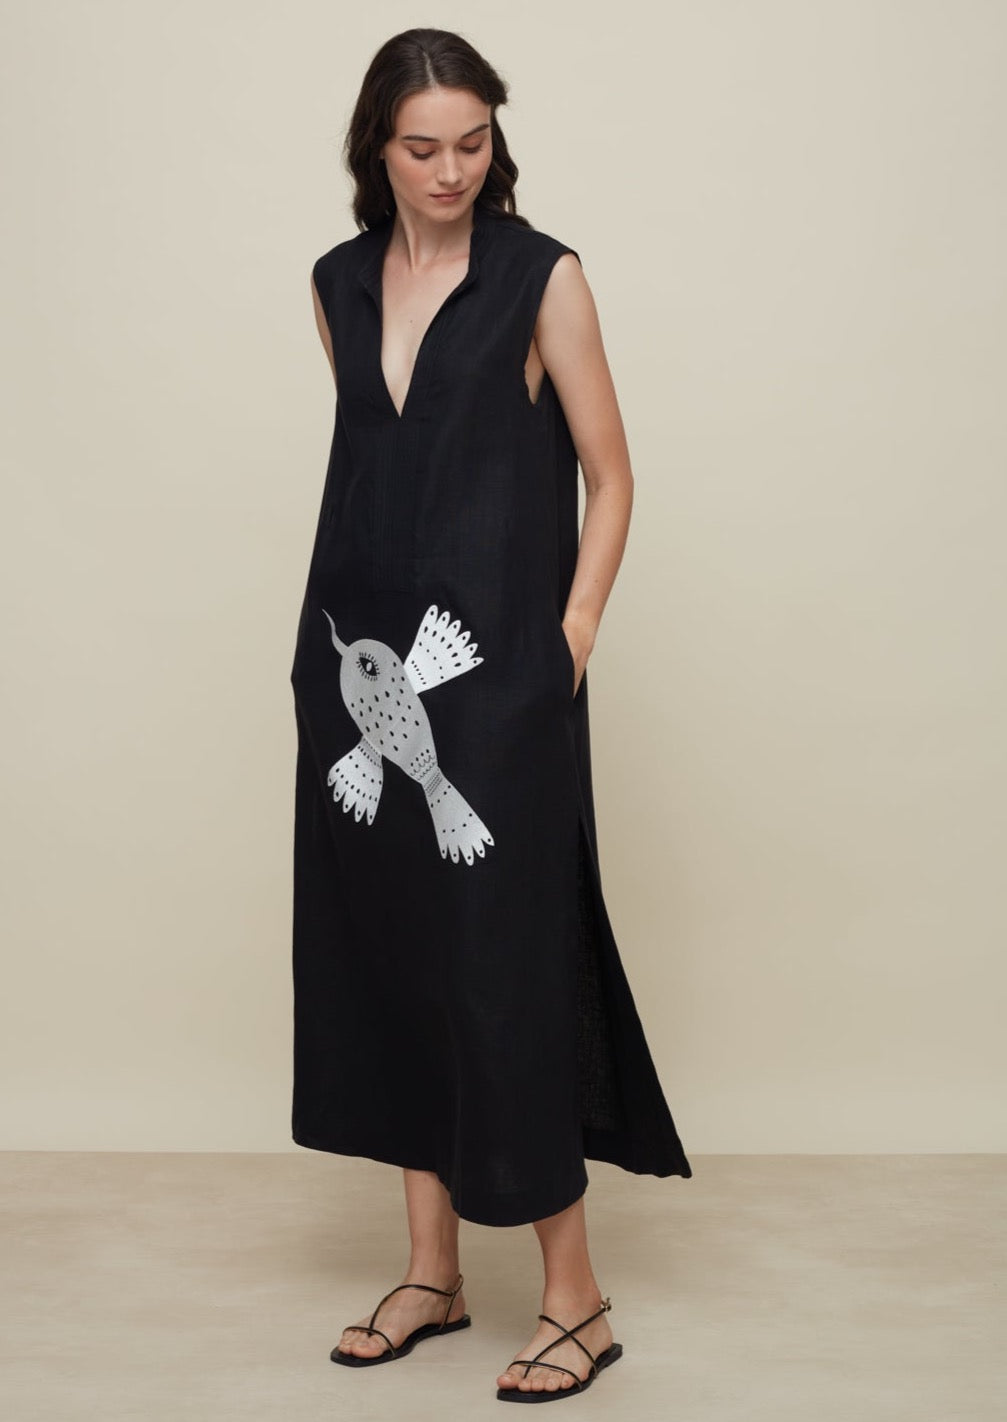 Galeria-Frade Black Bird Dress-Justbrazil